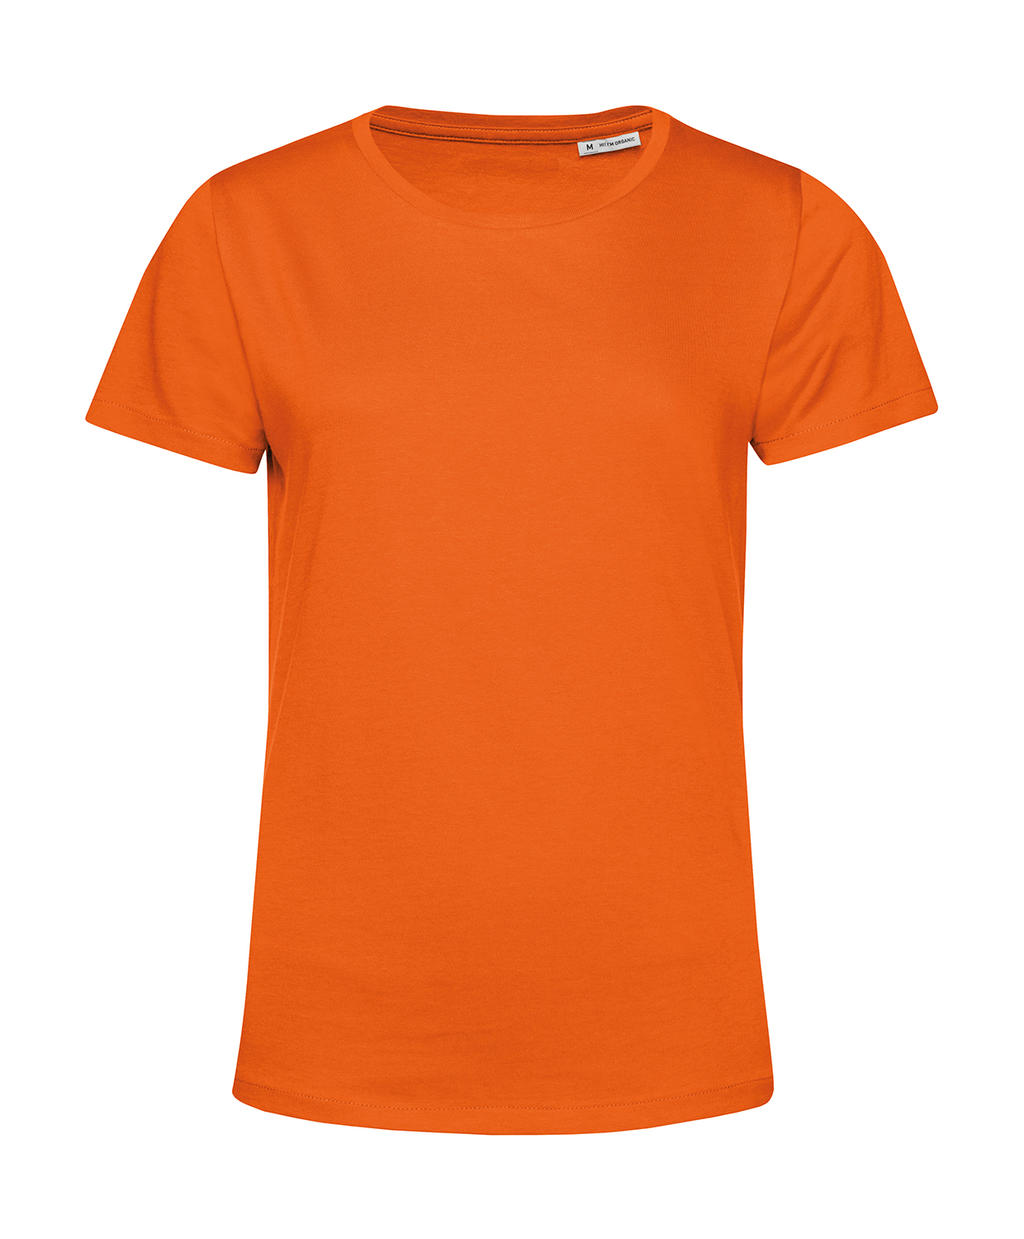 Tričko dámské BC Organic Inspire E150 - oranžové, XXL